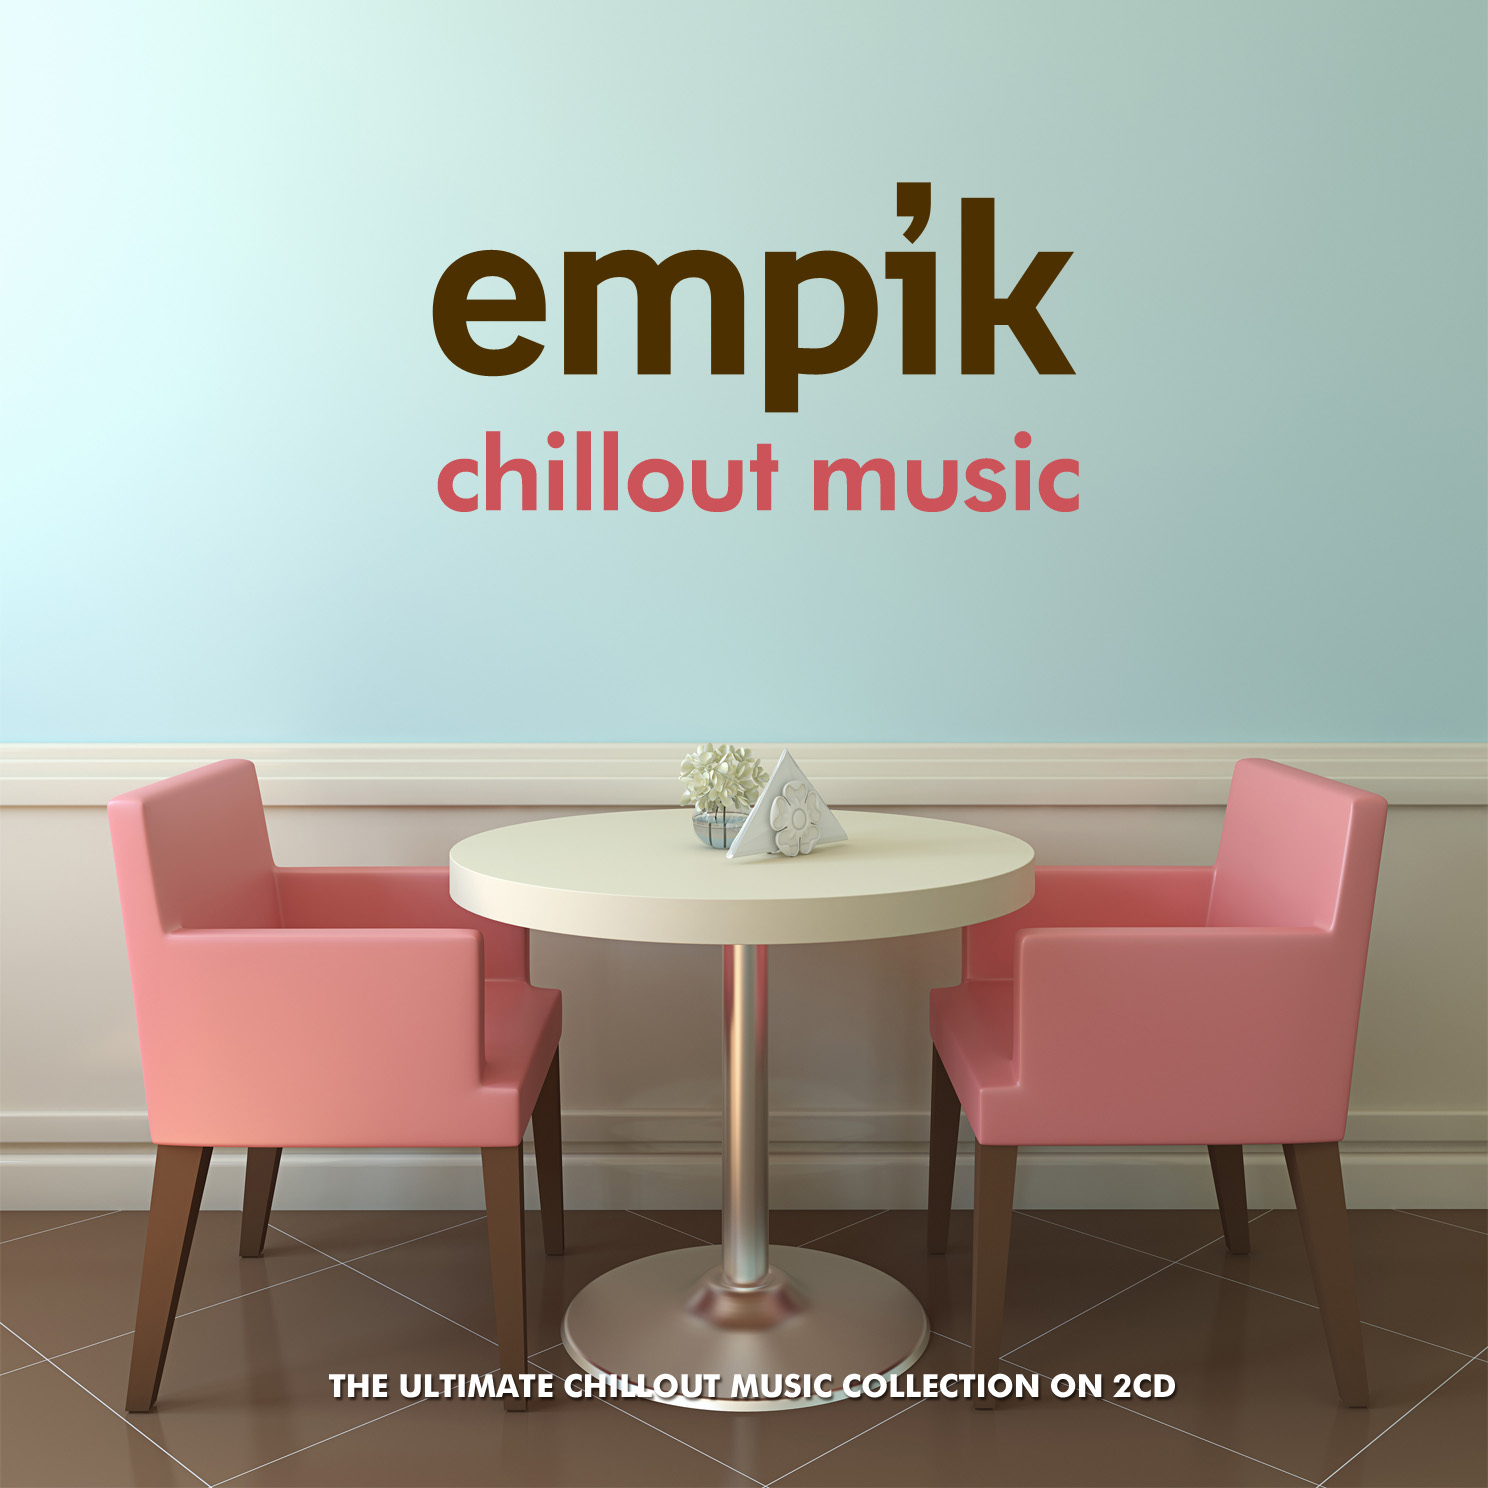 rozni_wykonawcy__empik_chillout_music